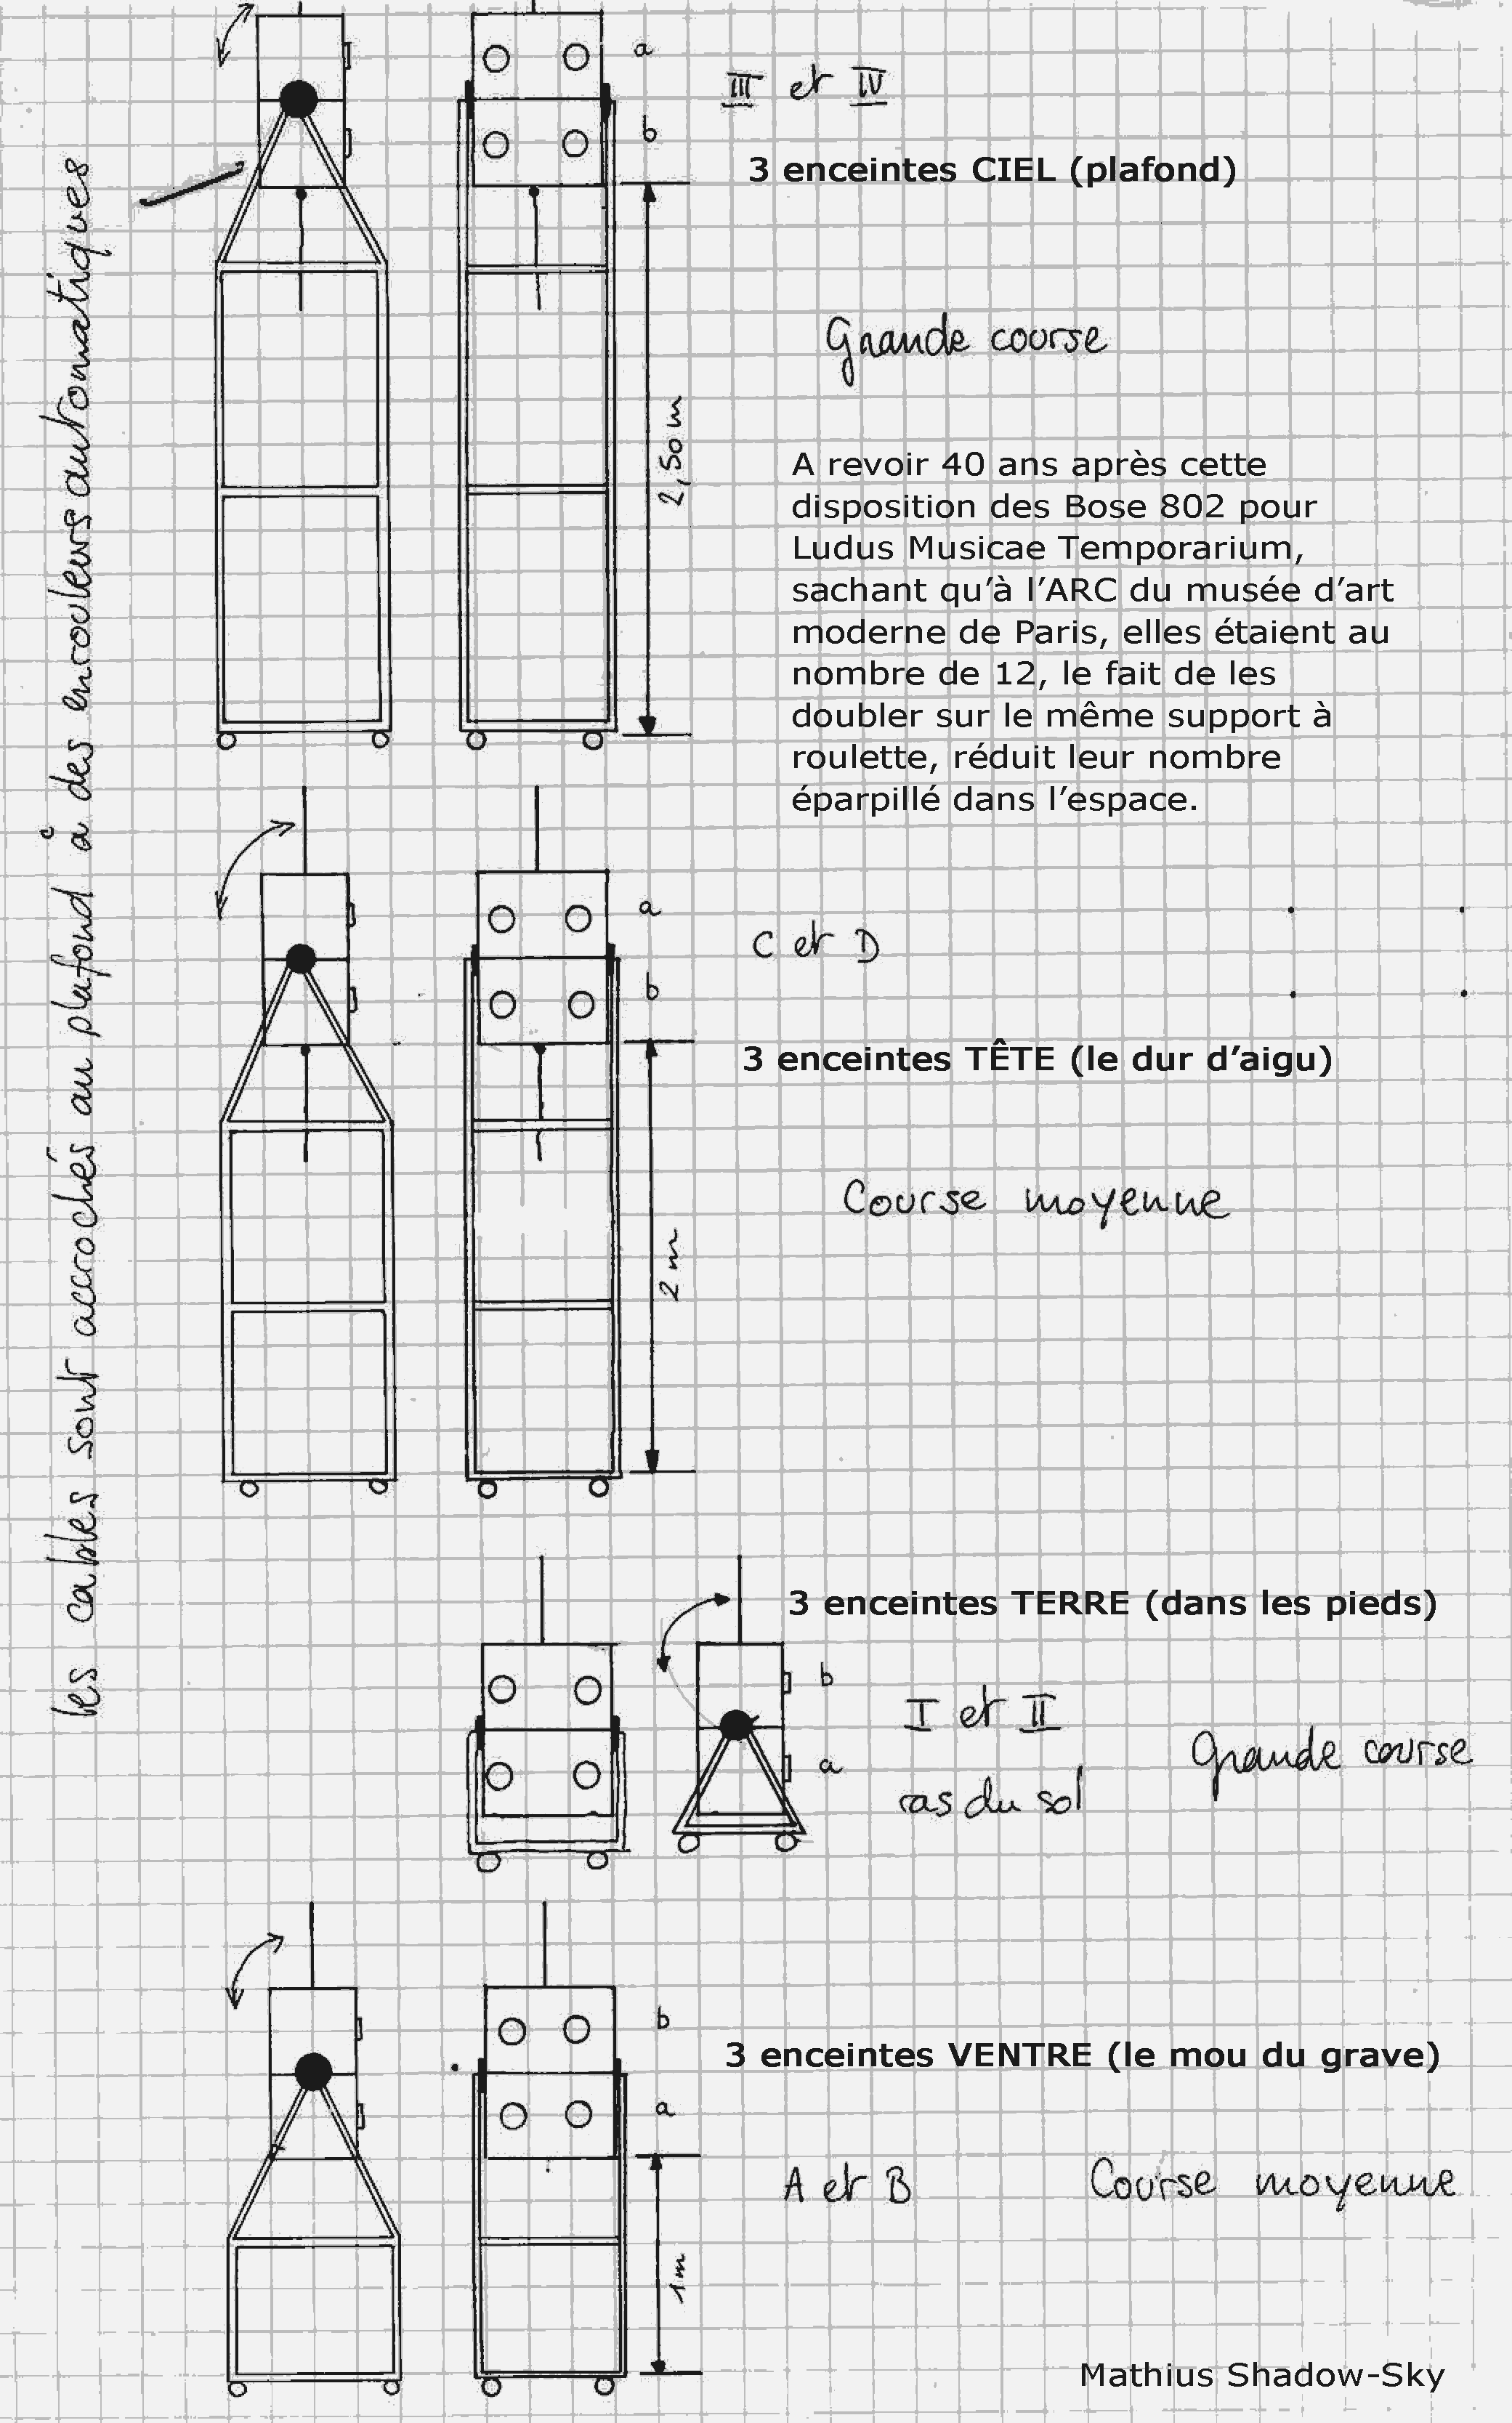 schéma des enceintes portée pour Ludus Musicae Temporarium à l'ARC du musée d'art moderne de Paris en 1981